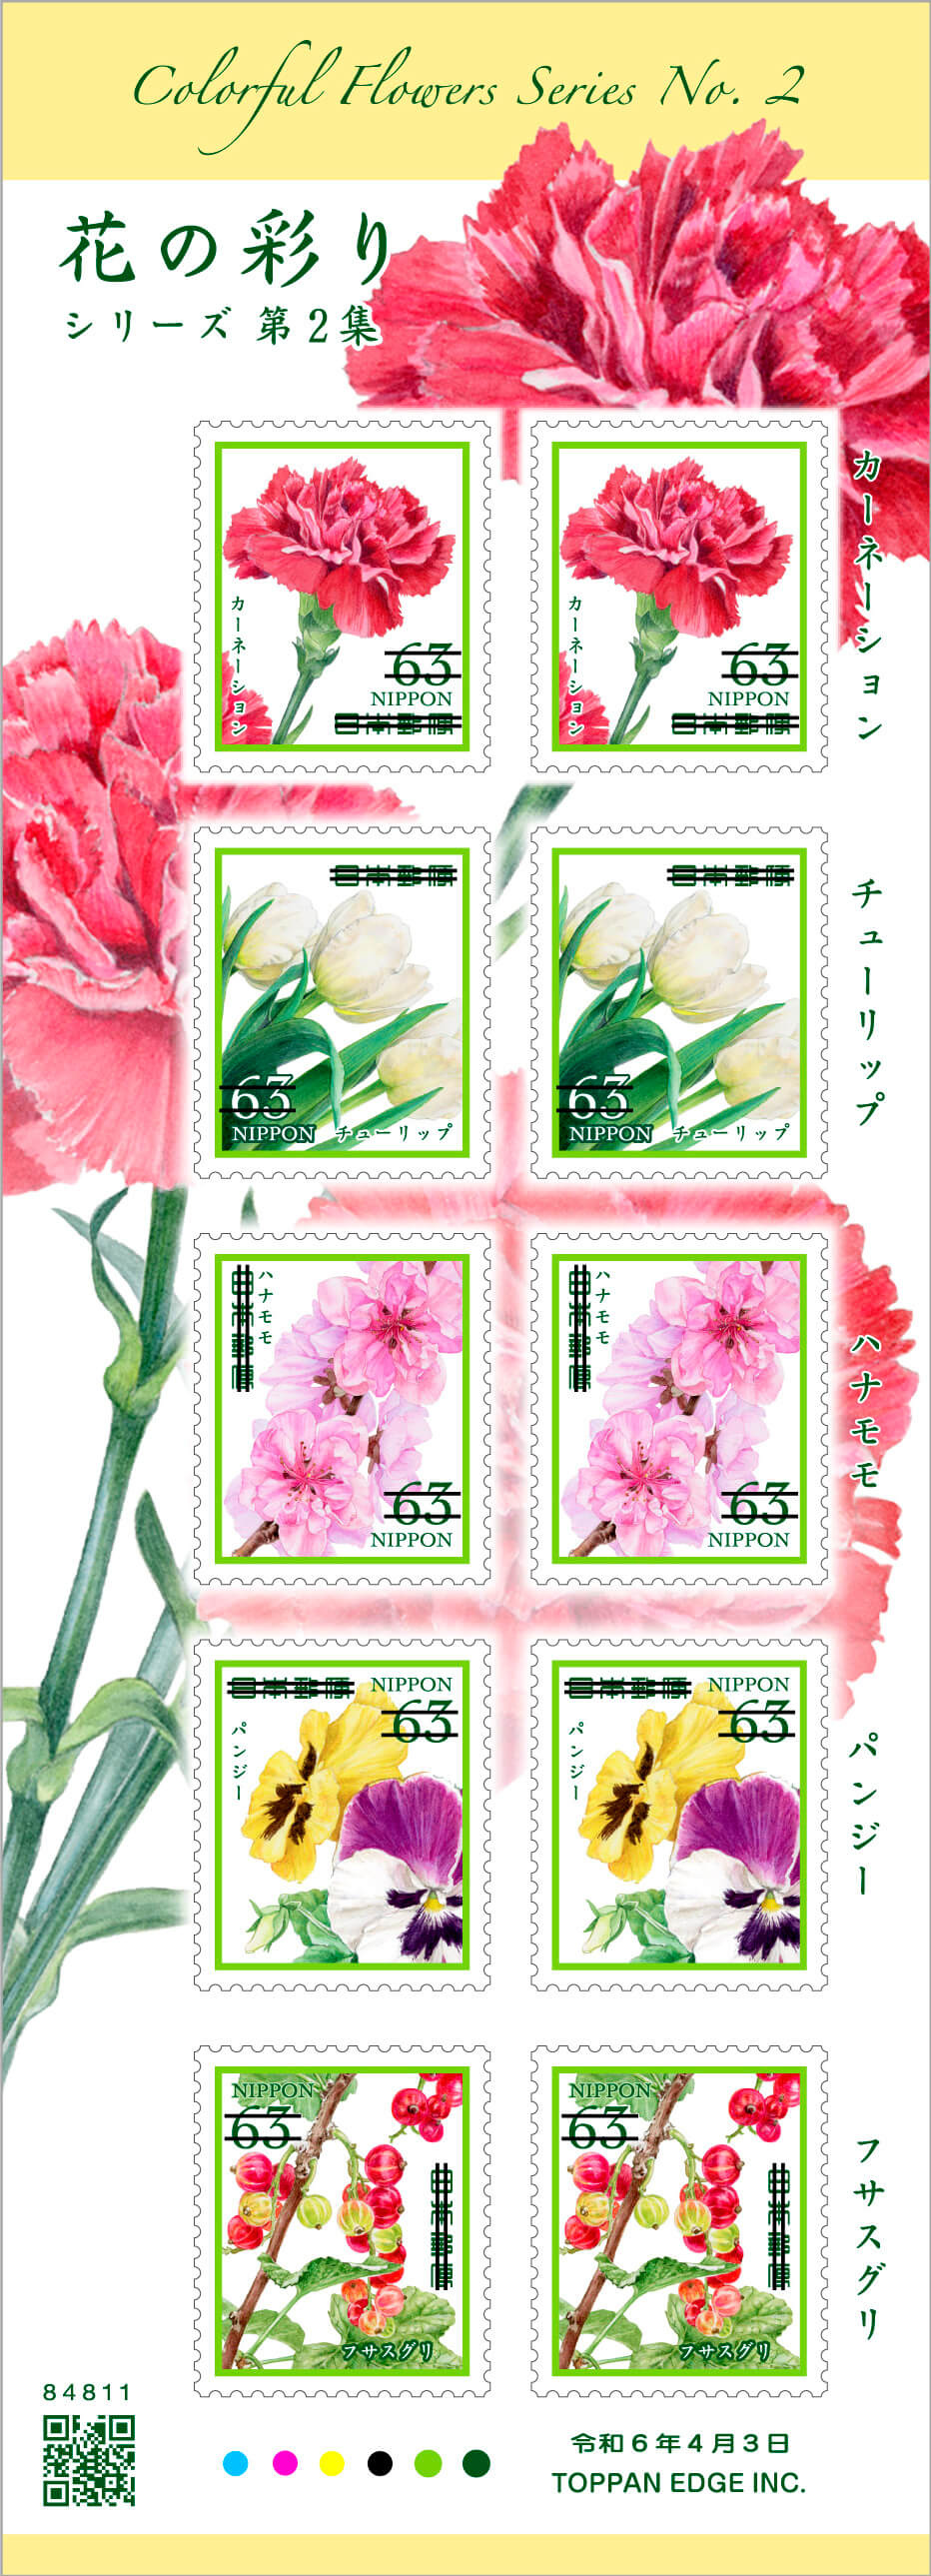 63円切手(1シート)